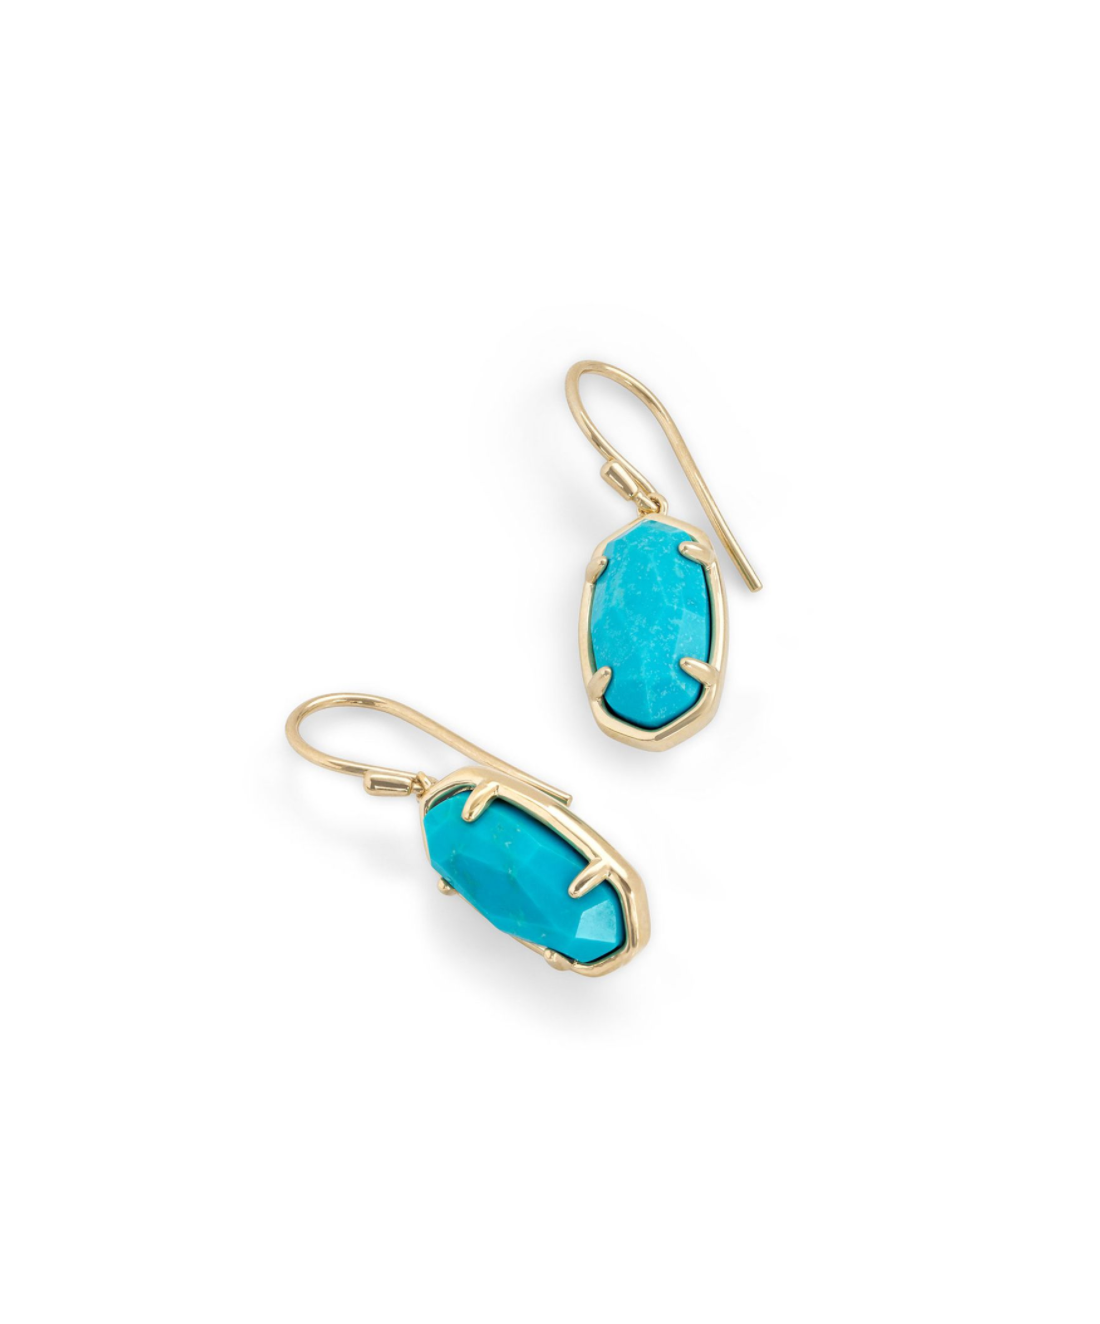 Lee Drop Earrings in 18k Gold Vermeil Turquoise